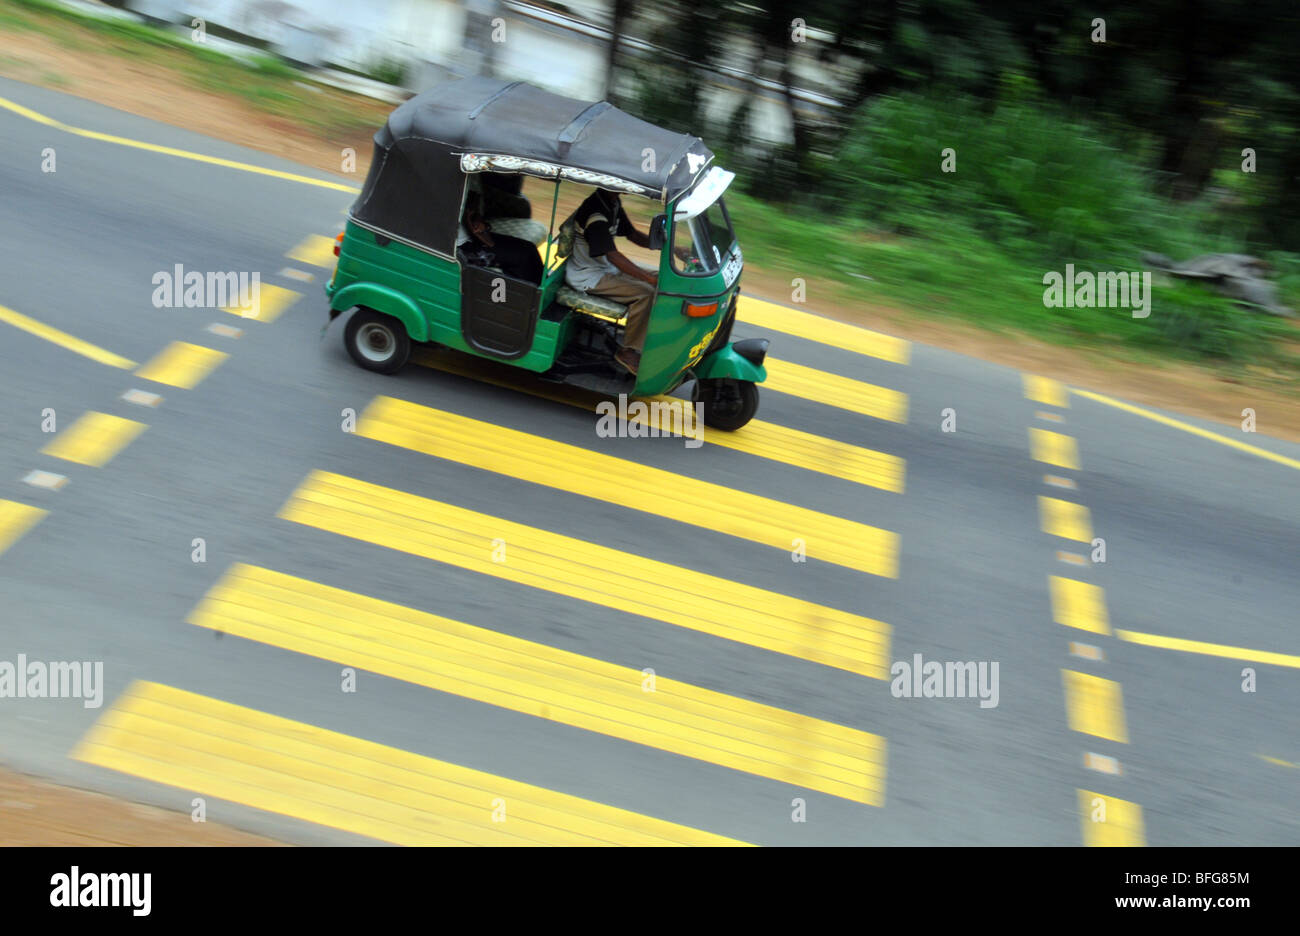 Tuk Tuk ou taxi trishaw au Sri Lanka, Sri Lanka tuk-tuk Banque D'Images